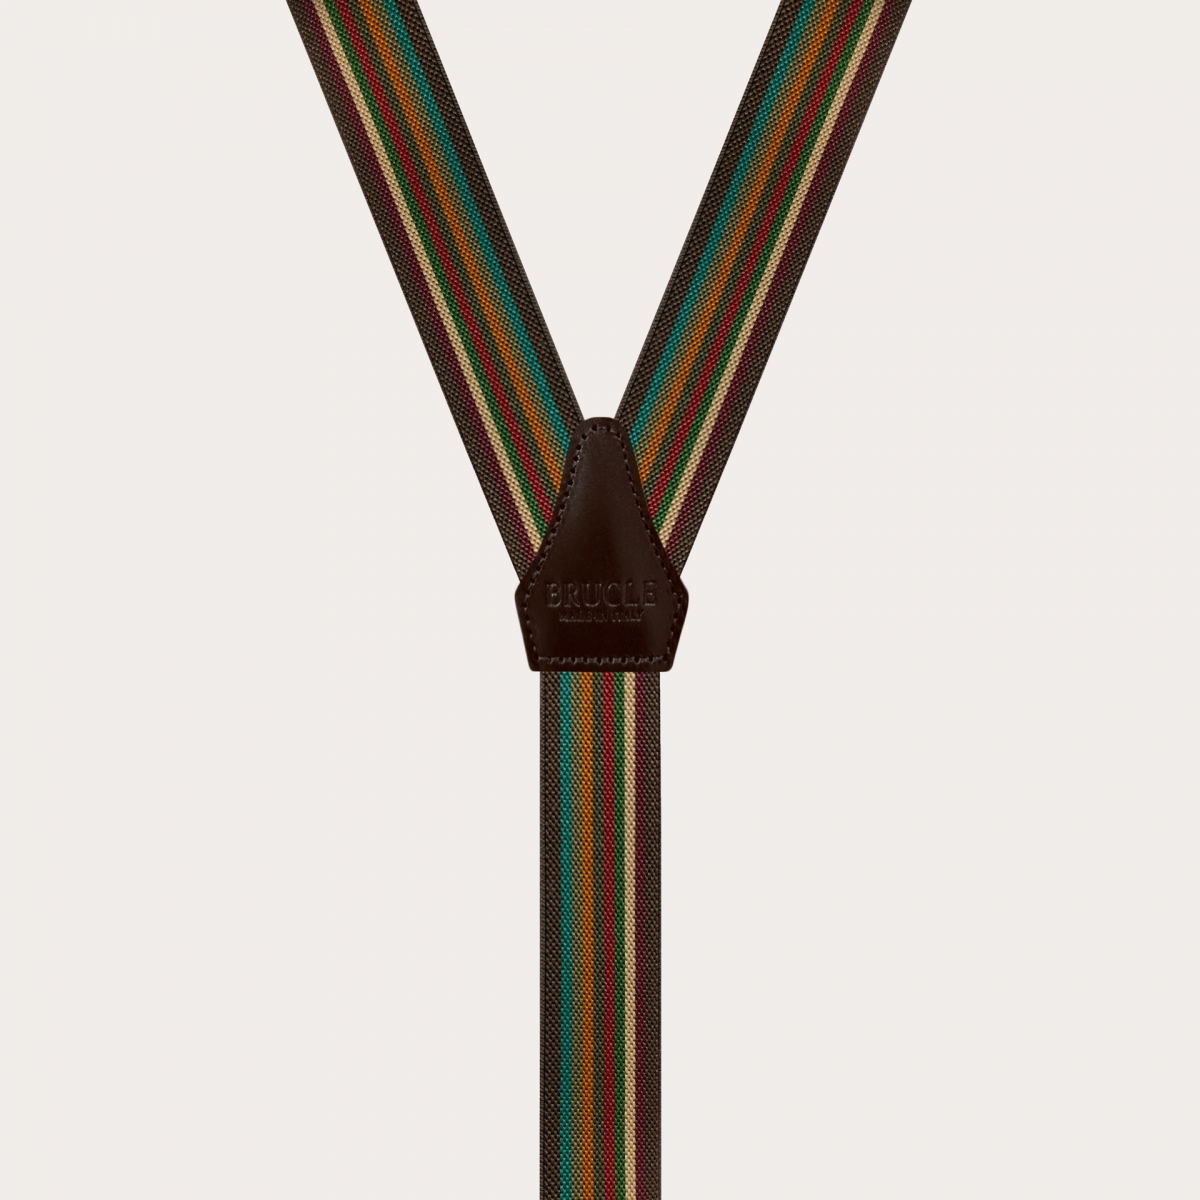 BRUCLE Schmale Hosenträger in Y-Form mit mehrfarbigen Streifen in Brauntönen